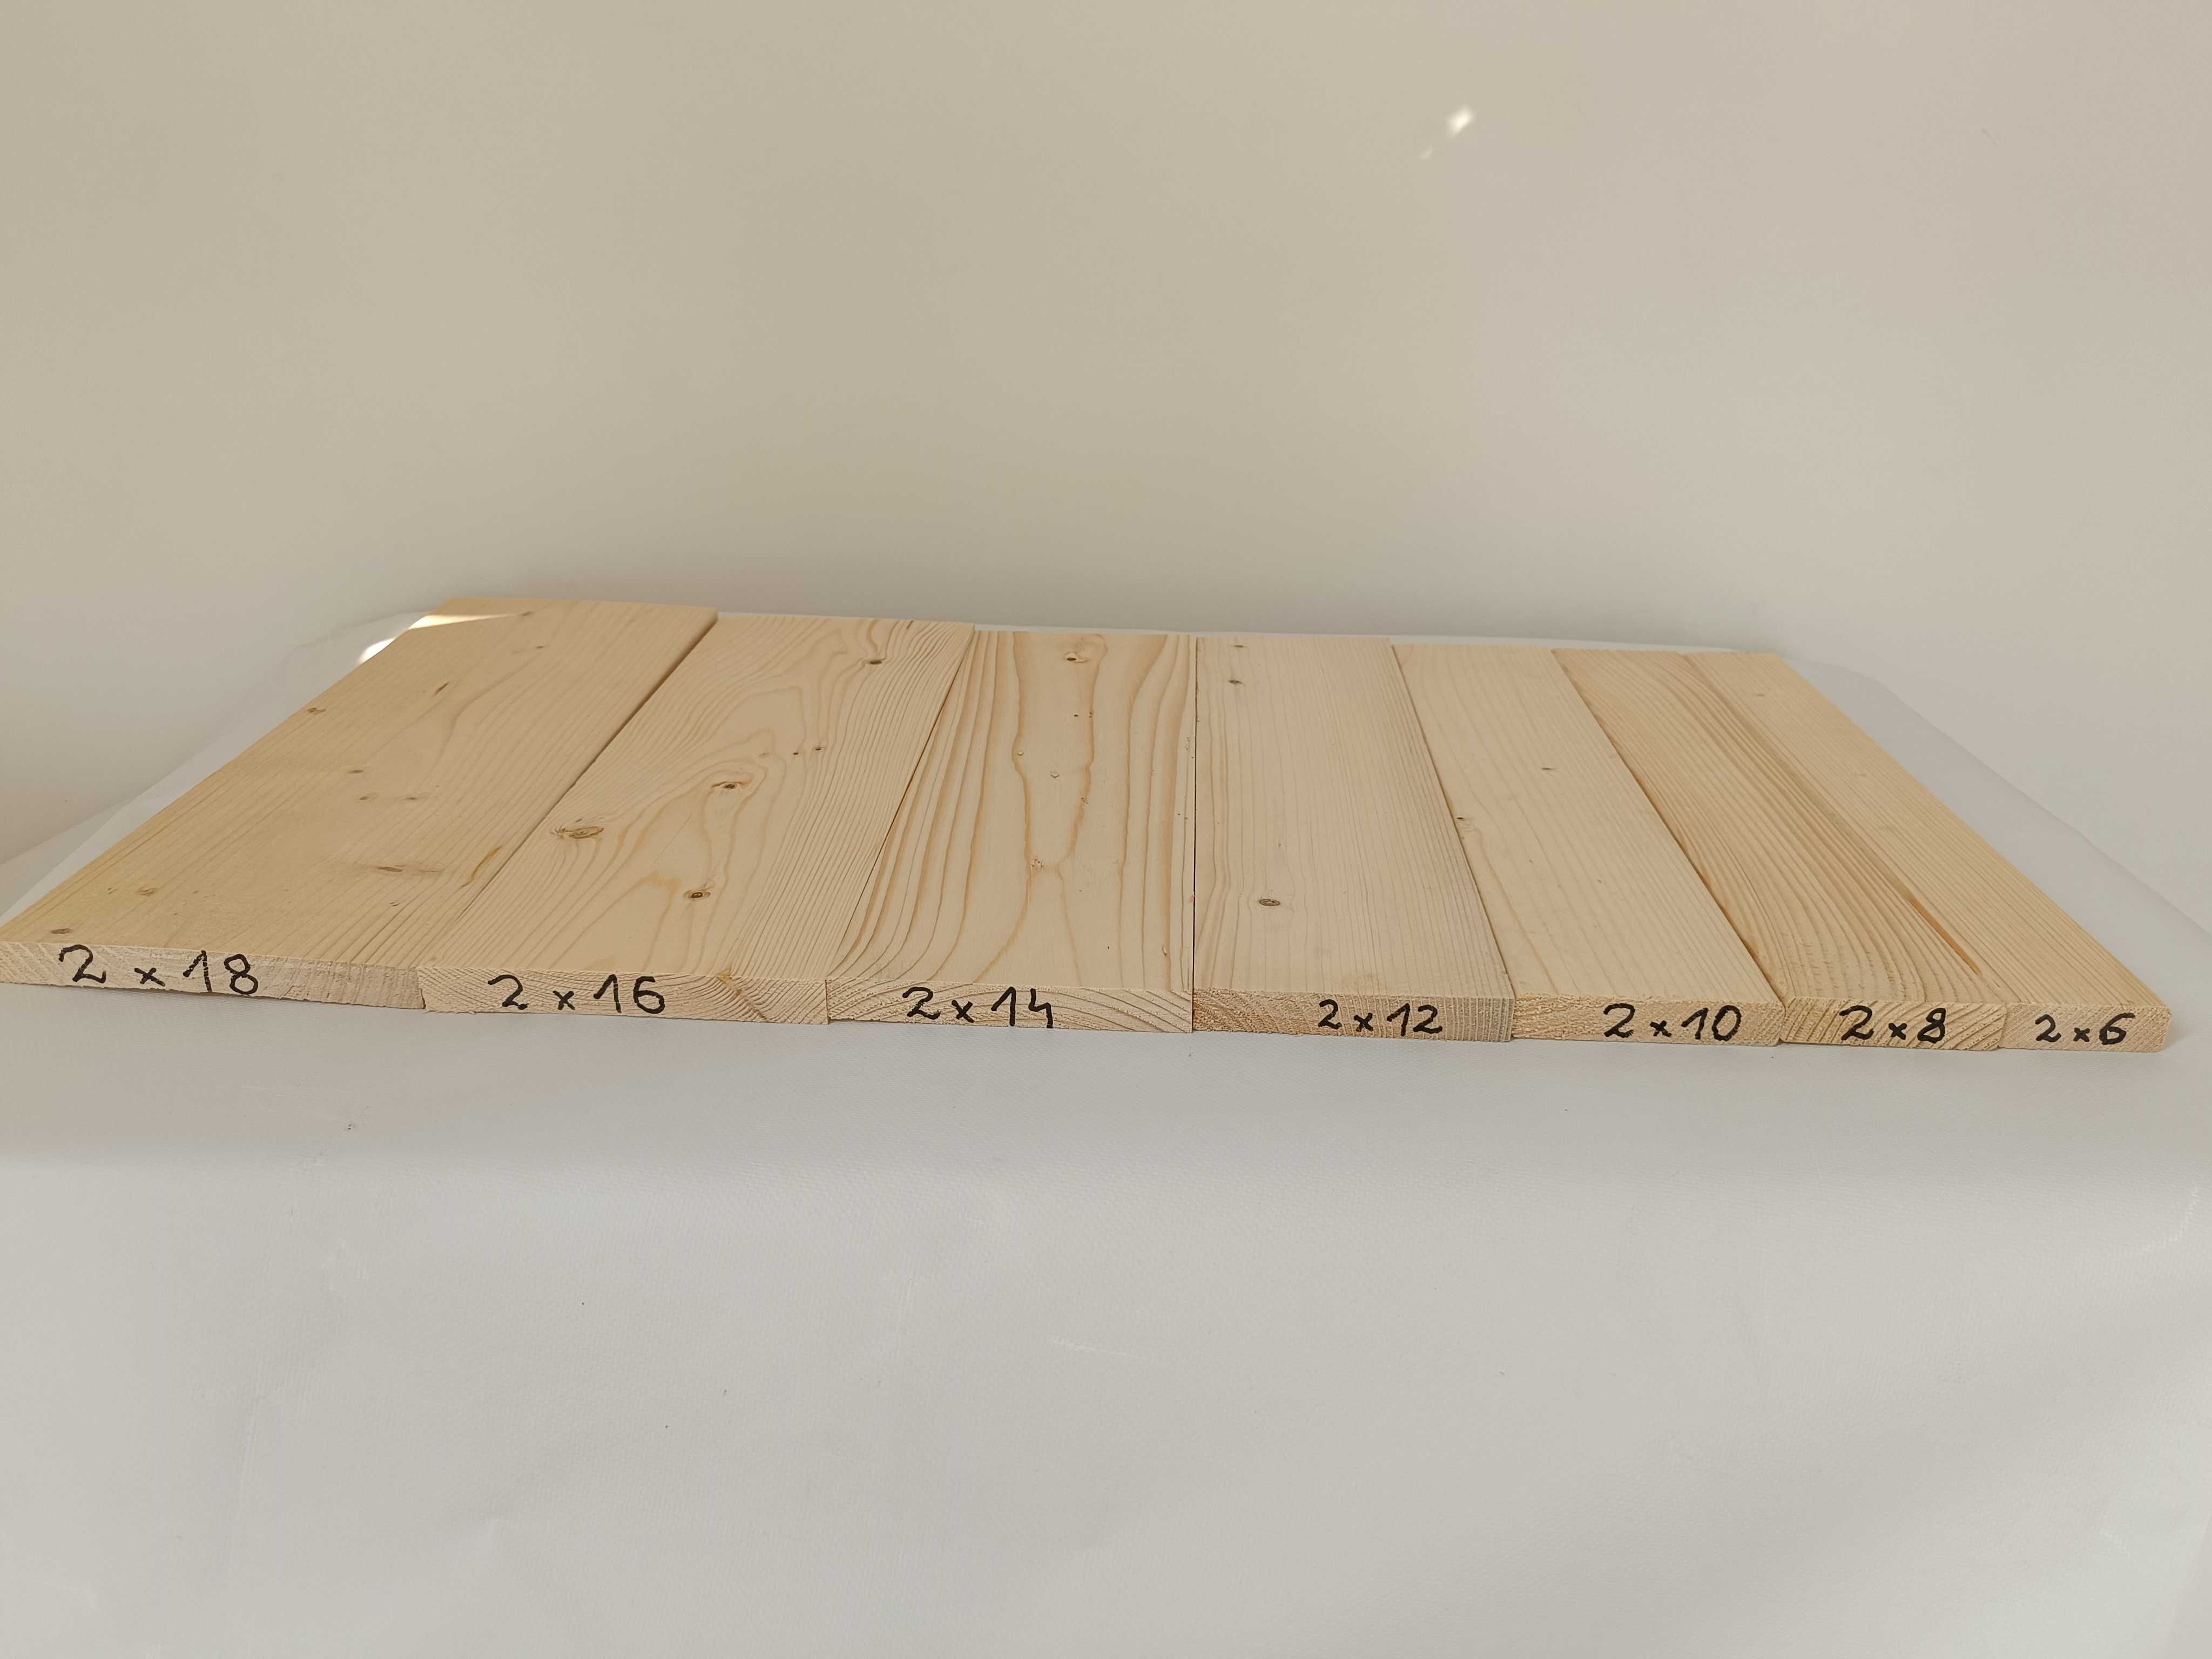 Deski strugane czterostronnie, żaluzje drewniane